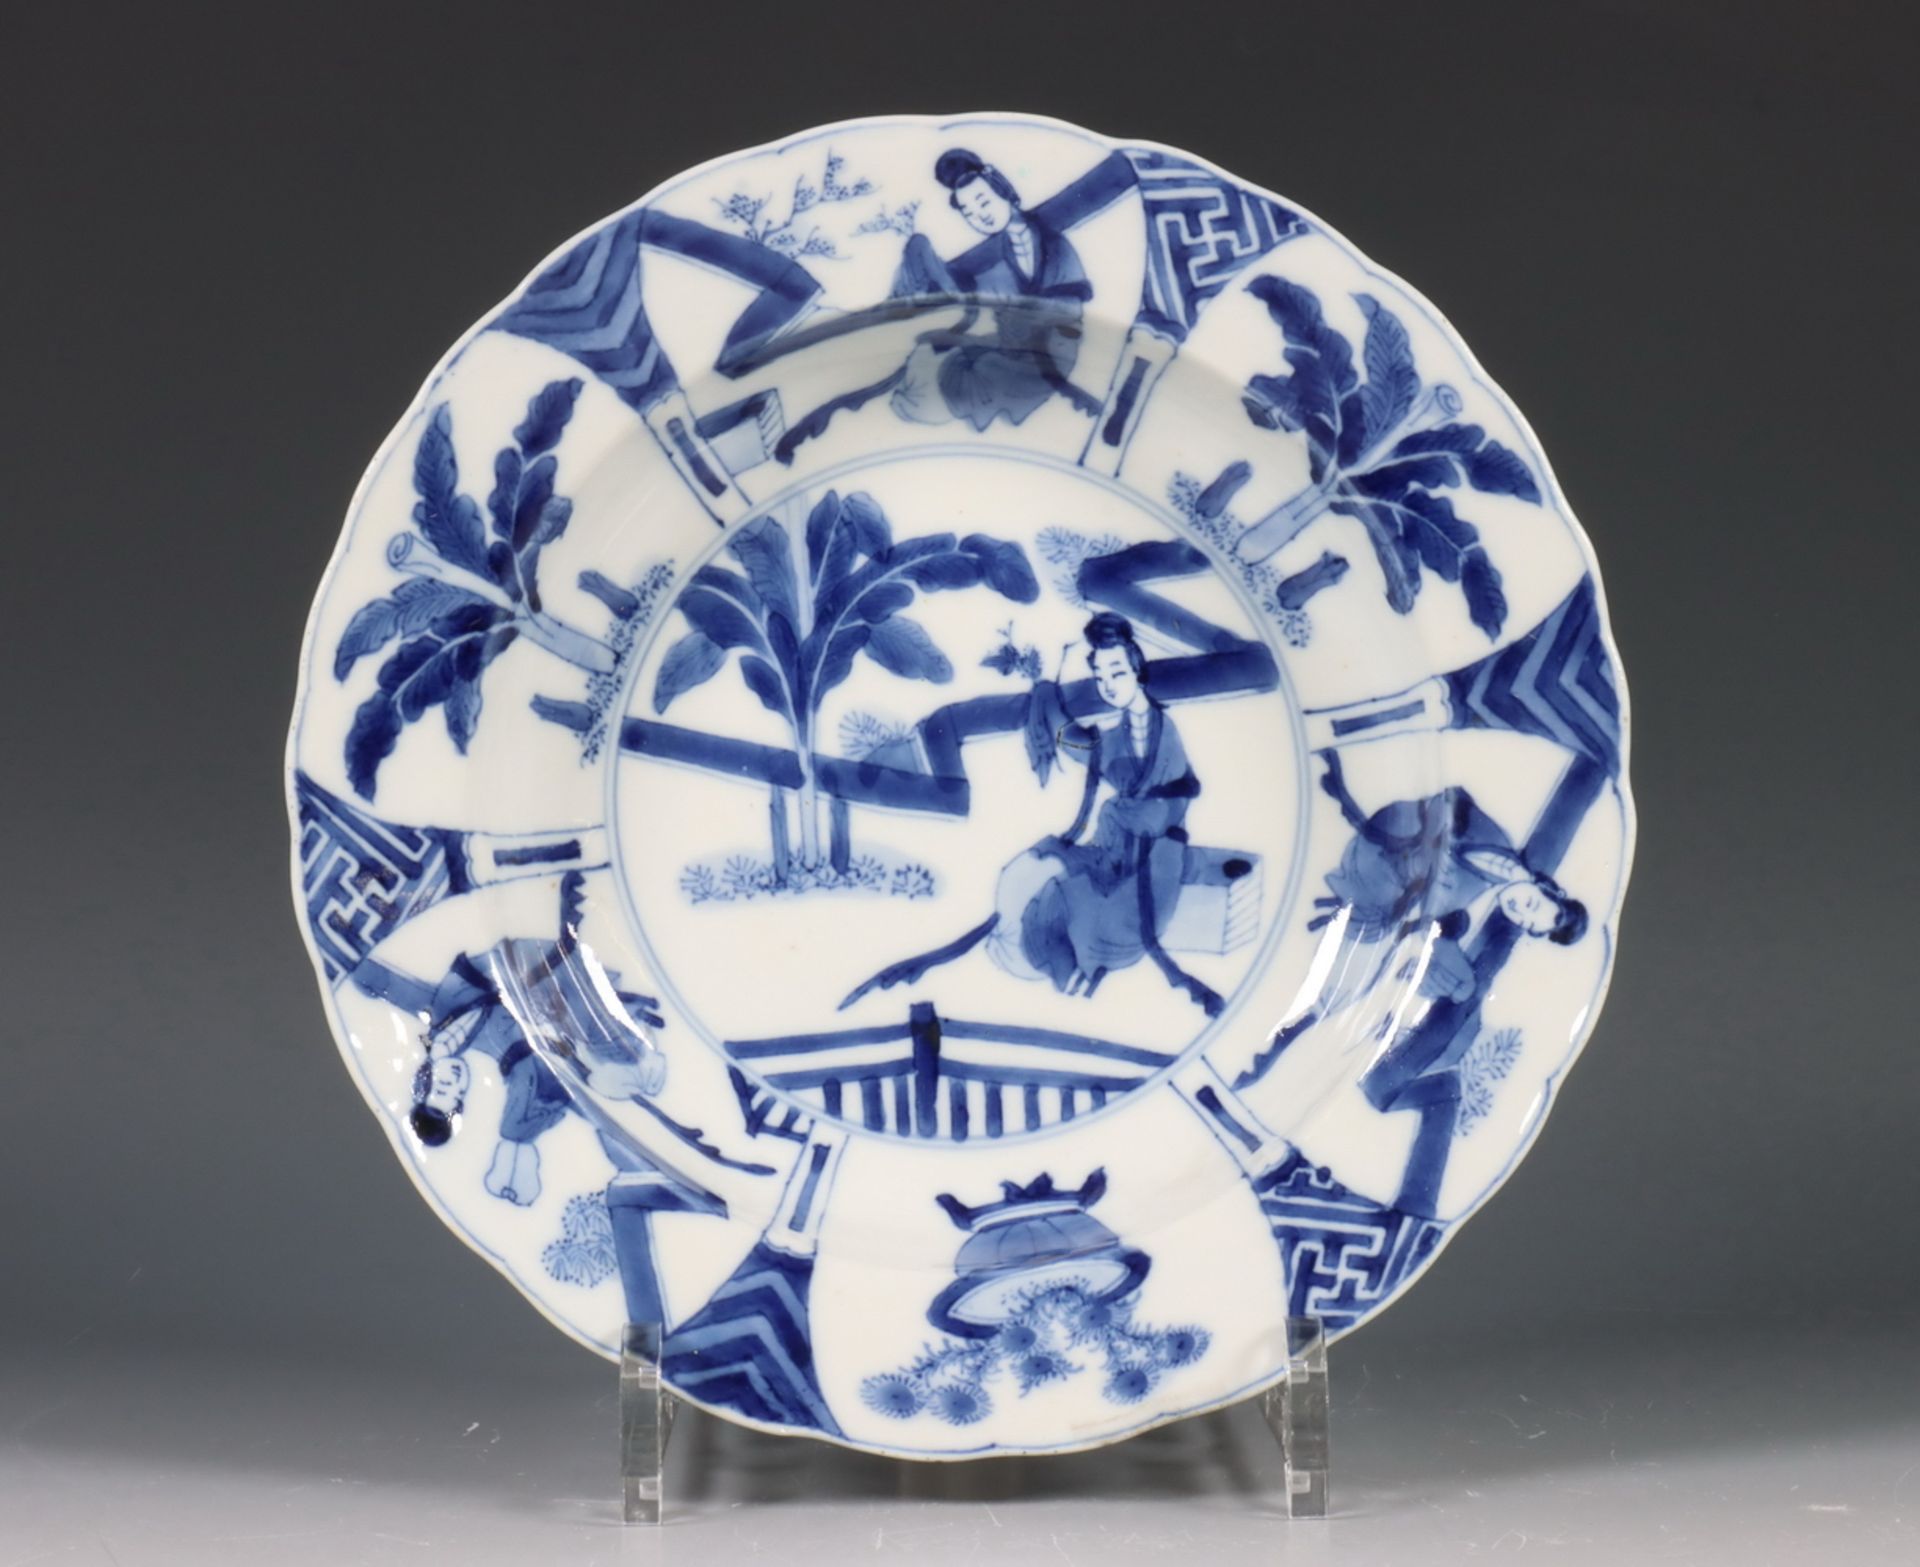 China, diep blauw-wit porseleinen bord, Kangxi zeskaraktermerk en uit de periode (1662-1722),